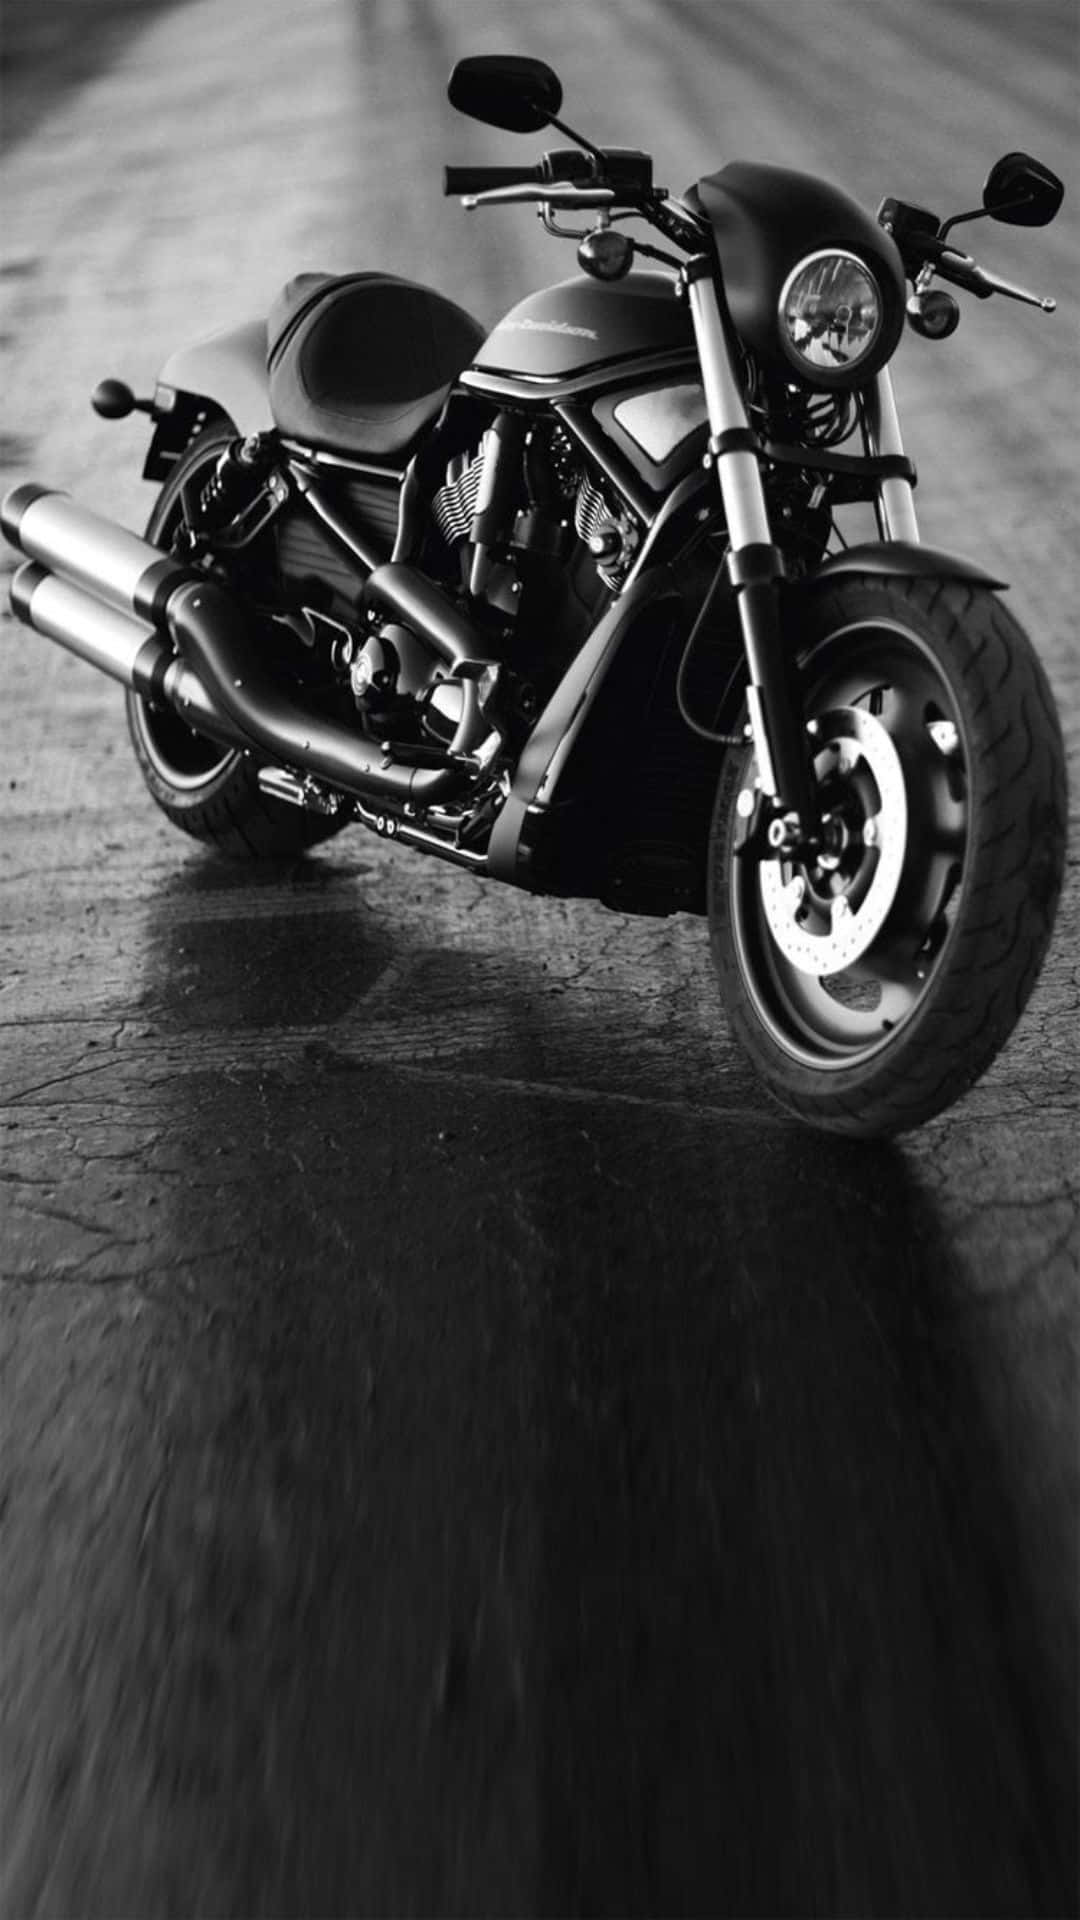 Monochrome Harley Davidson Hd Wallpaper